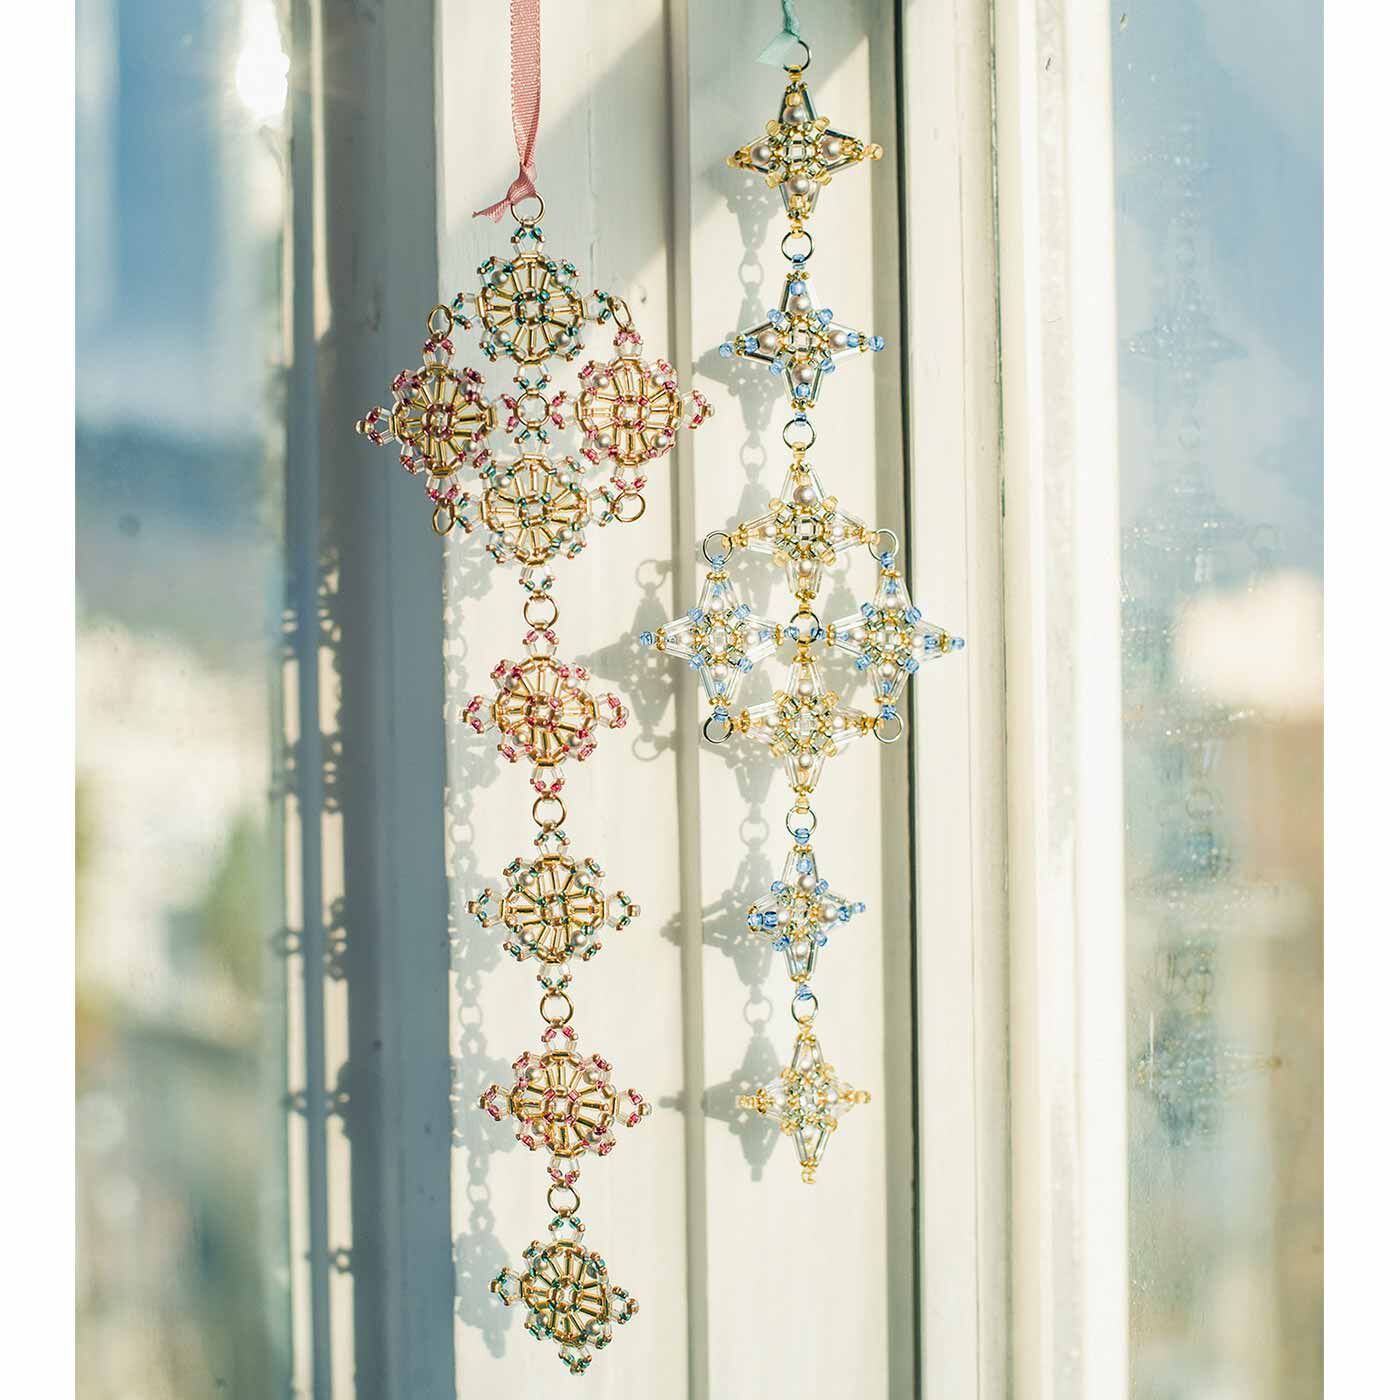 クチュリエ|グラスビーズの美しさで描く 連続模様の小さなモチーフの会|窓辺につるしてサンキャッチャーに